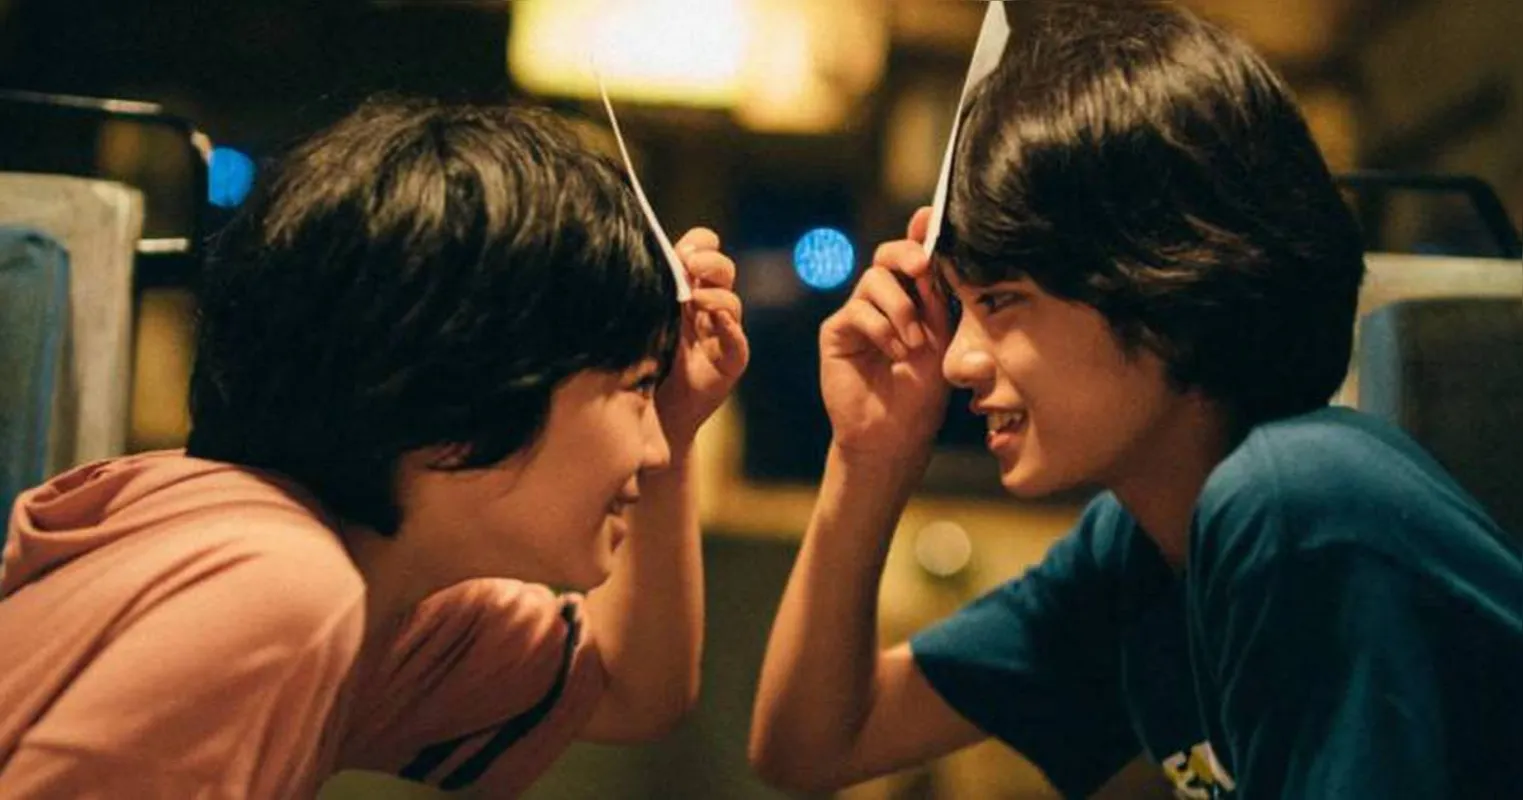 Filme de Hirokazu Kore-eda,  que dirigiu "Assunto de Família, vencedor da Palma de Ouro em 2018, traz temas como o bullying, os maus tratos e os julgamentos apressados